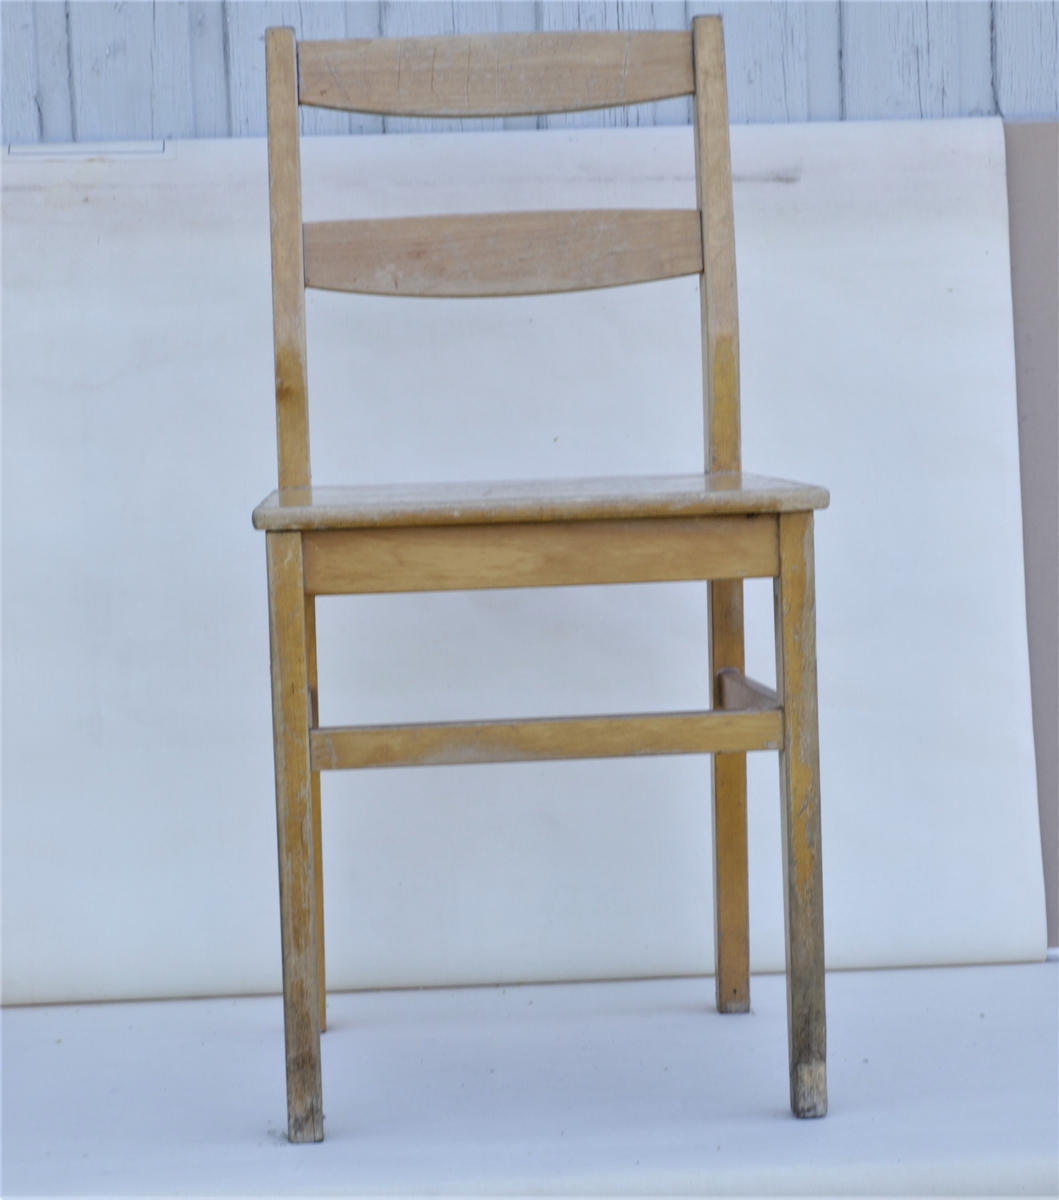 Barnestol av lakkert treverk brukt i klasserommet på skolen.